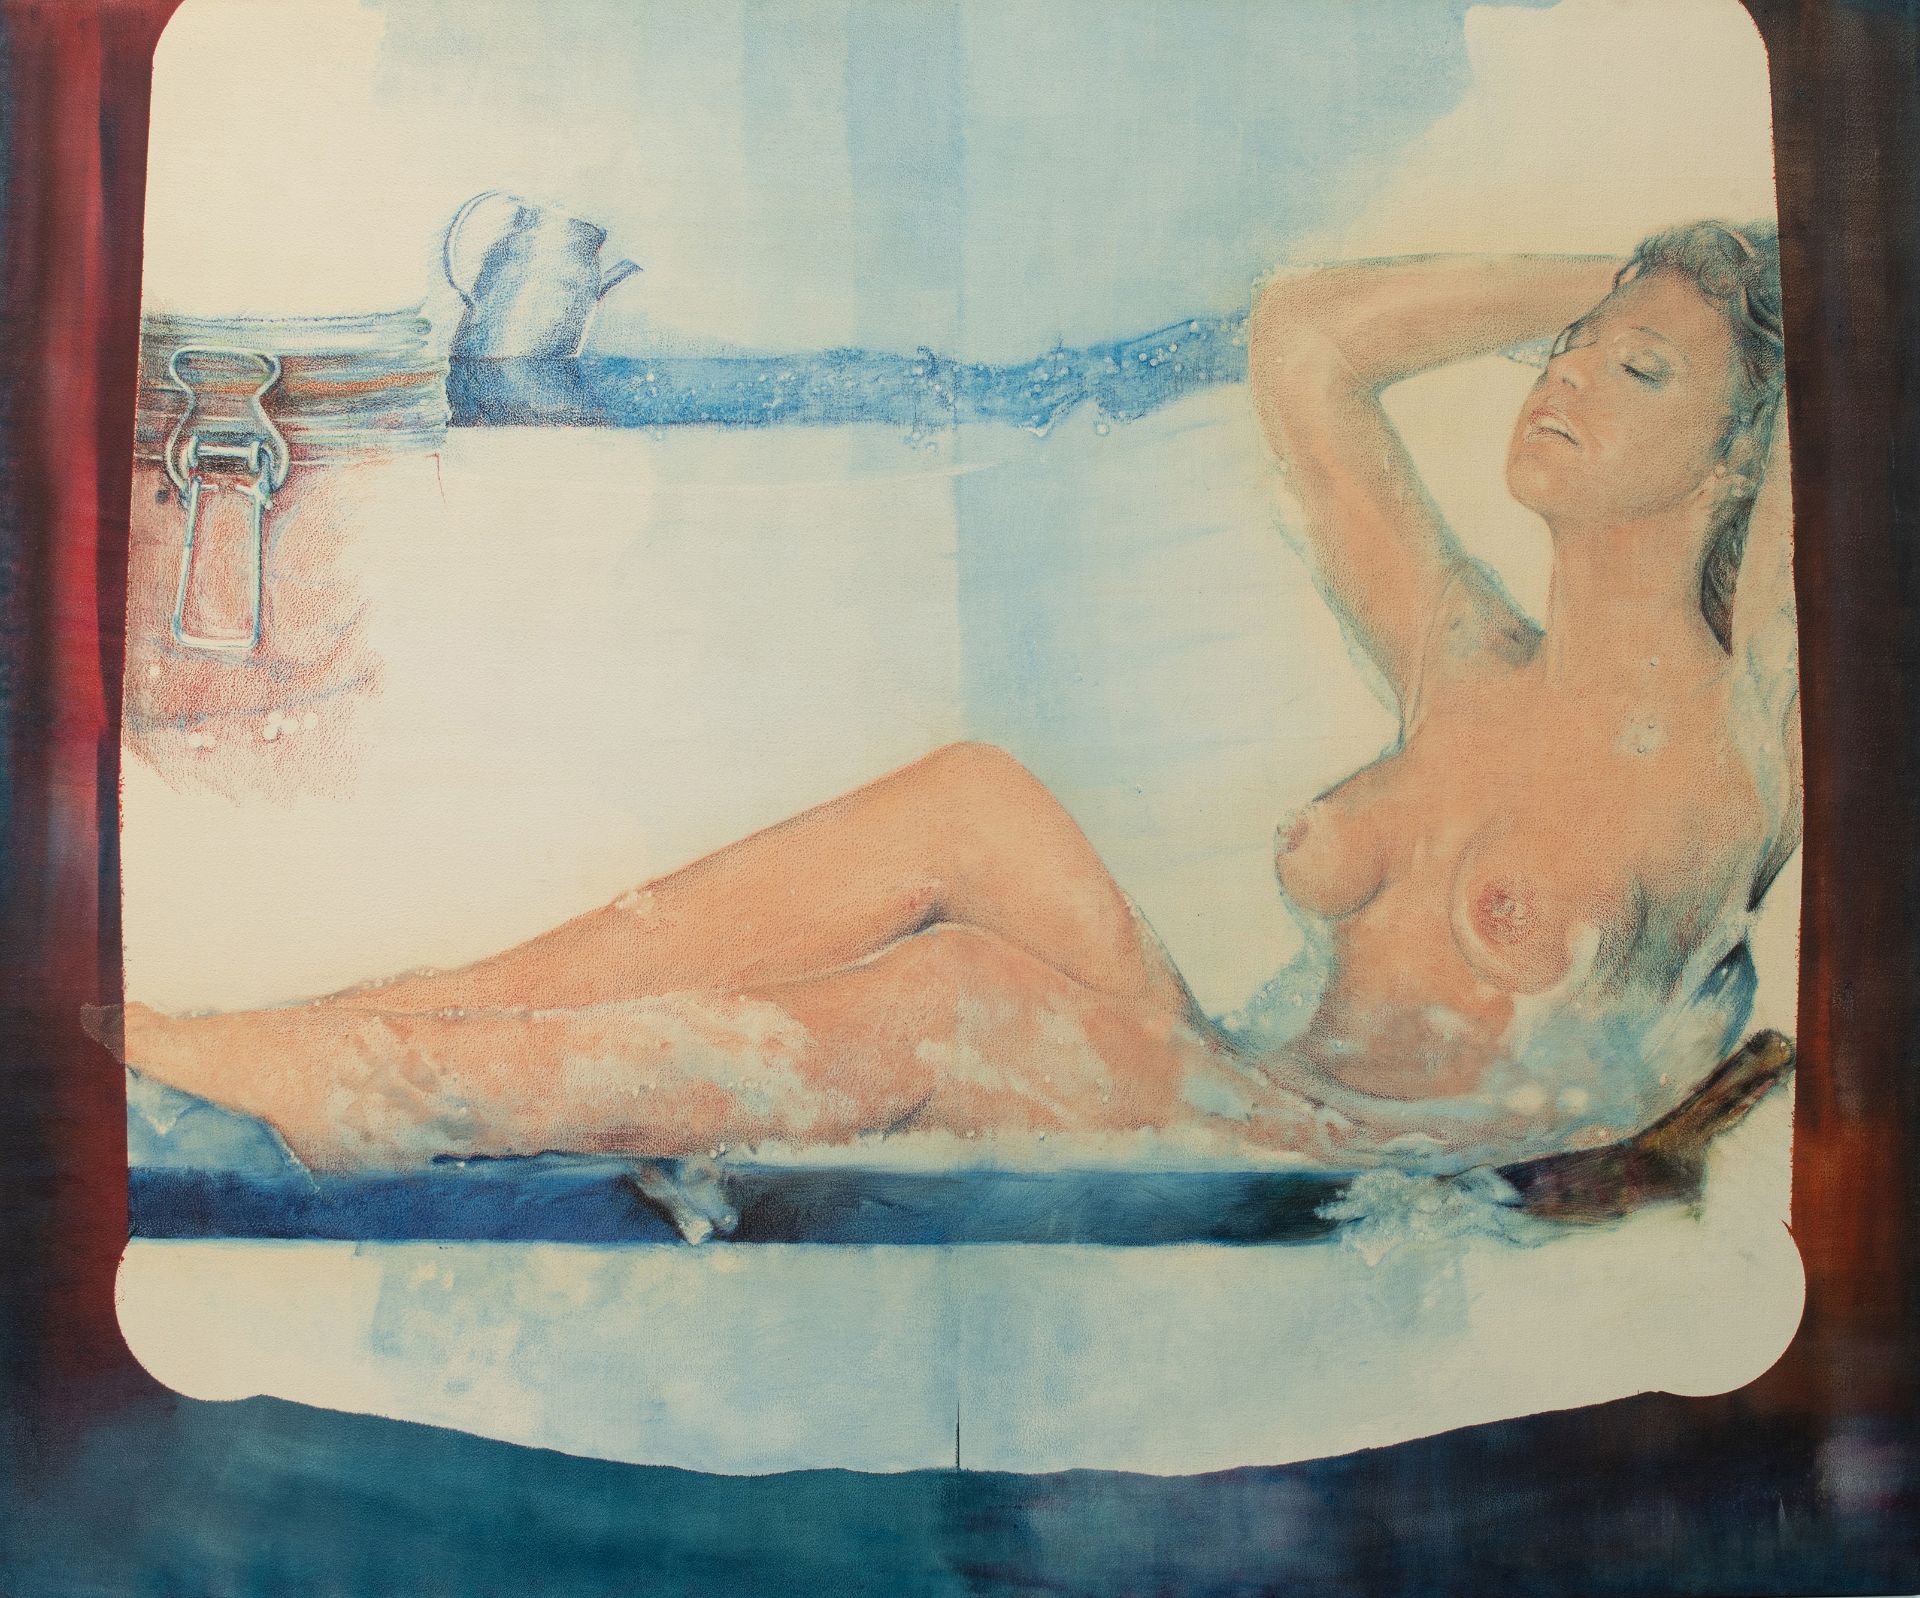 Pol Mara (1920-1998), 'Aimer Se Conserver', 1979, oil on canvas on panel, 167 x 195 cm